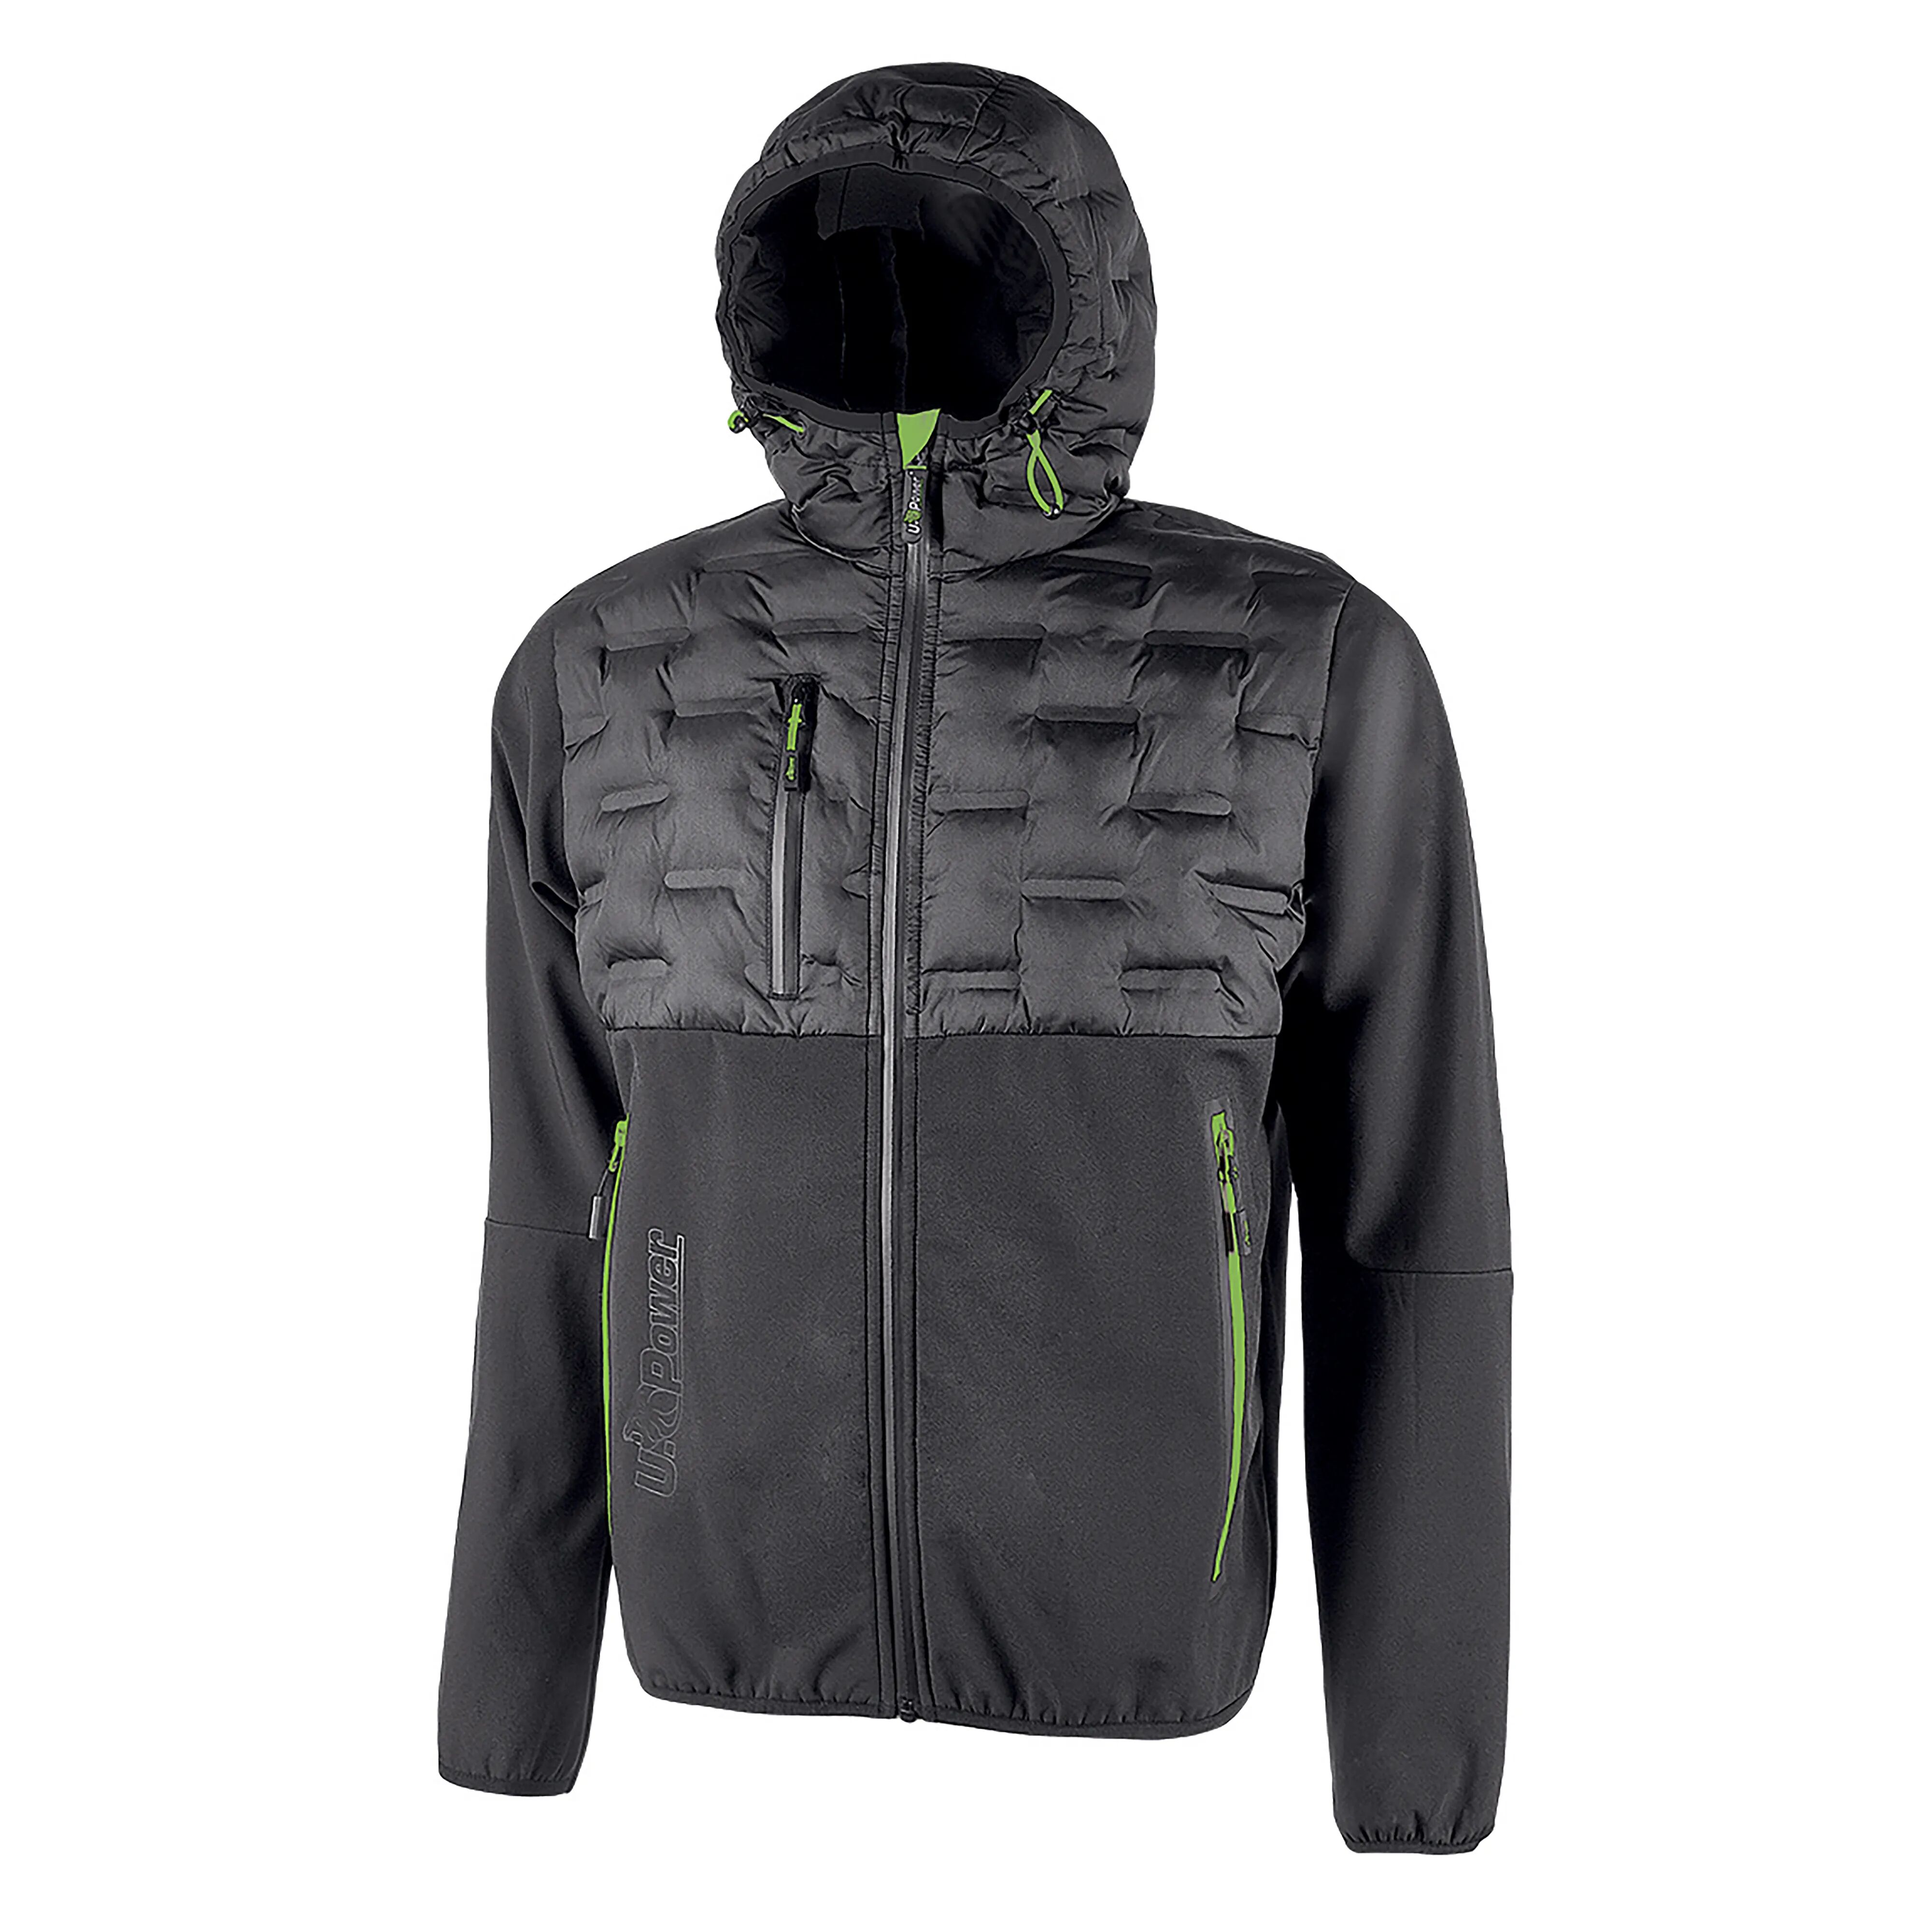 u-power giacca soft shell spock  taglia m colore grigio inserti verdi idrorepellente